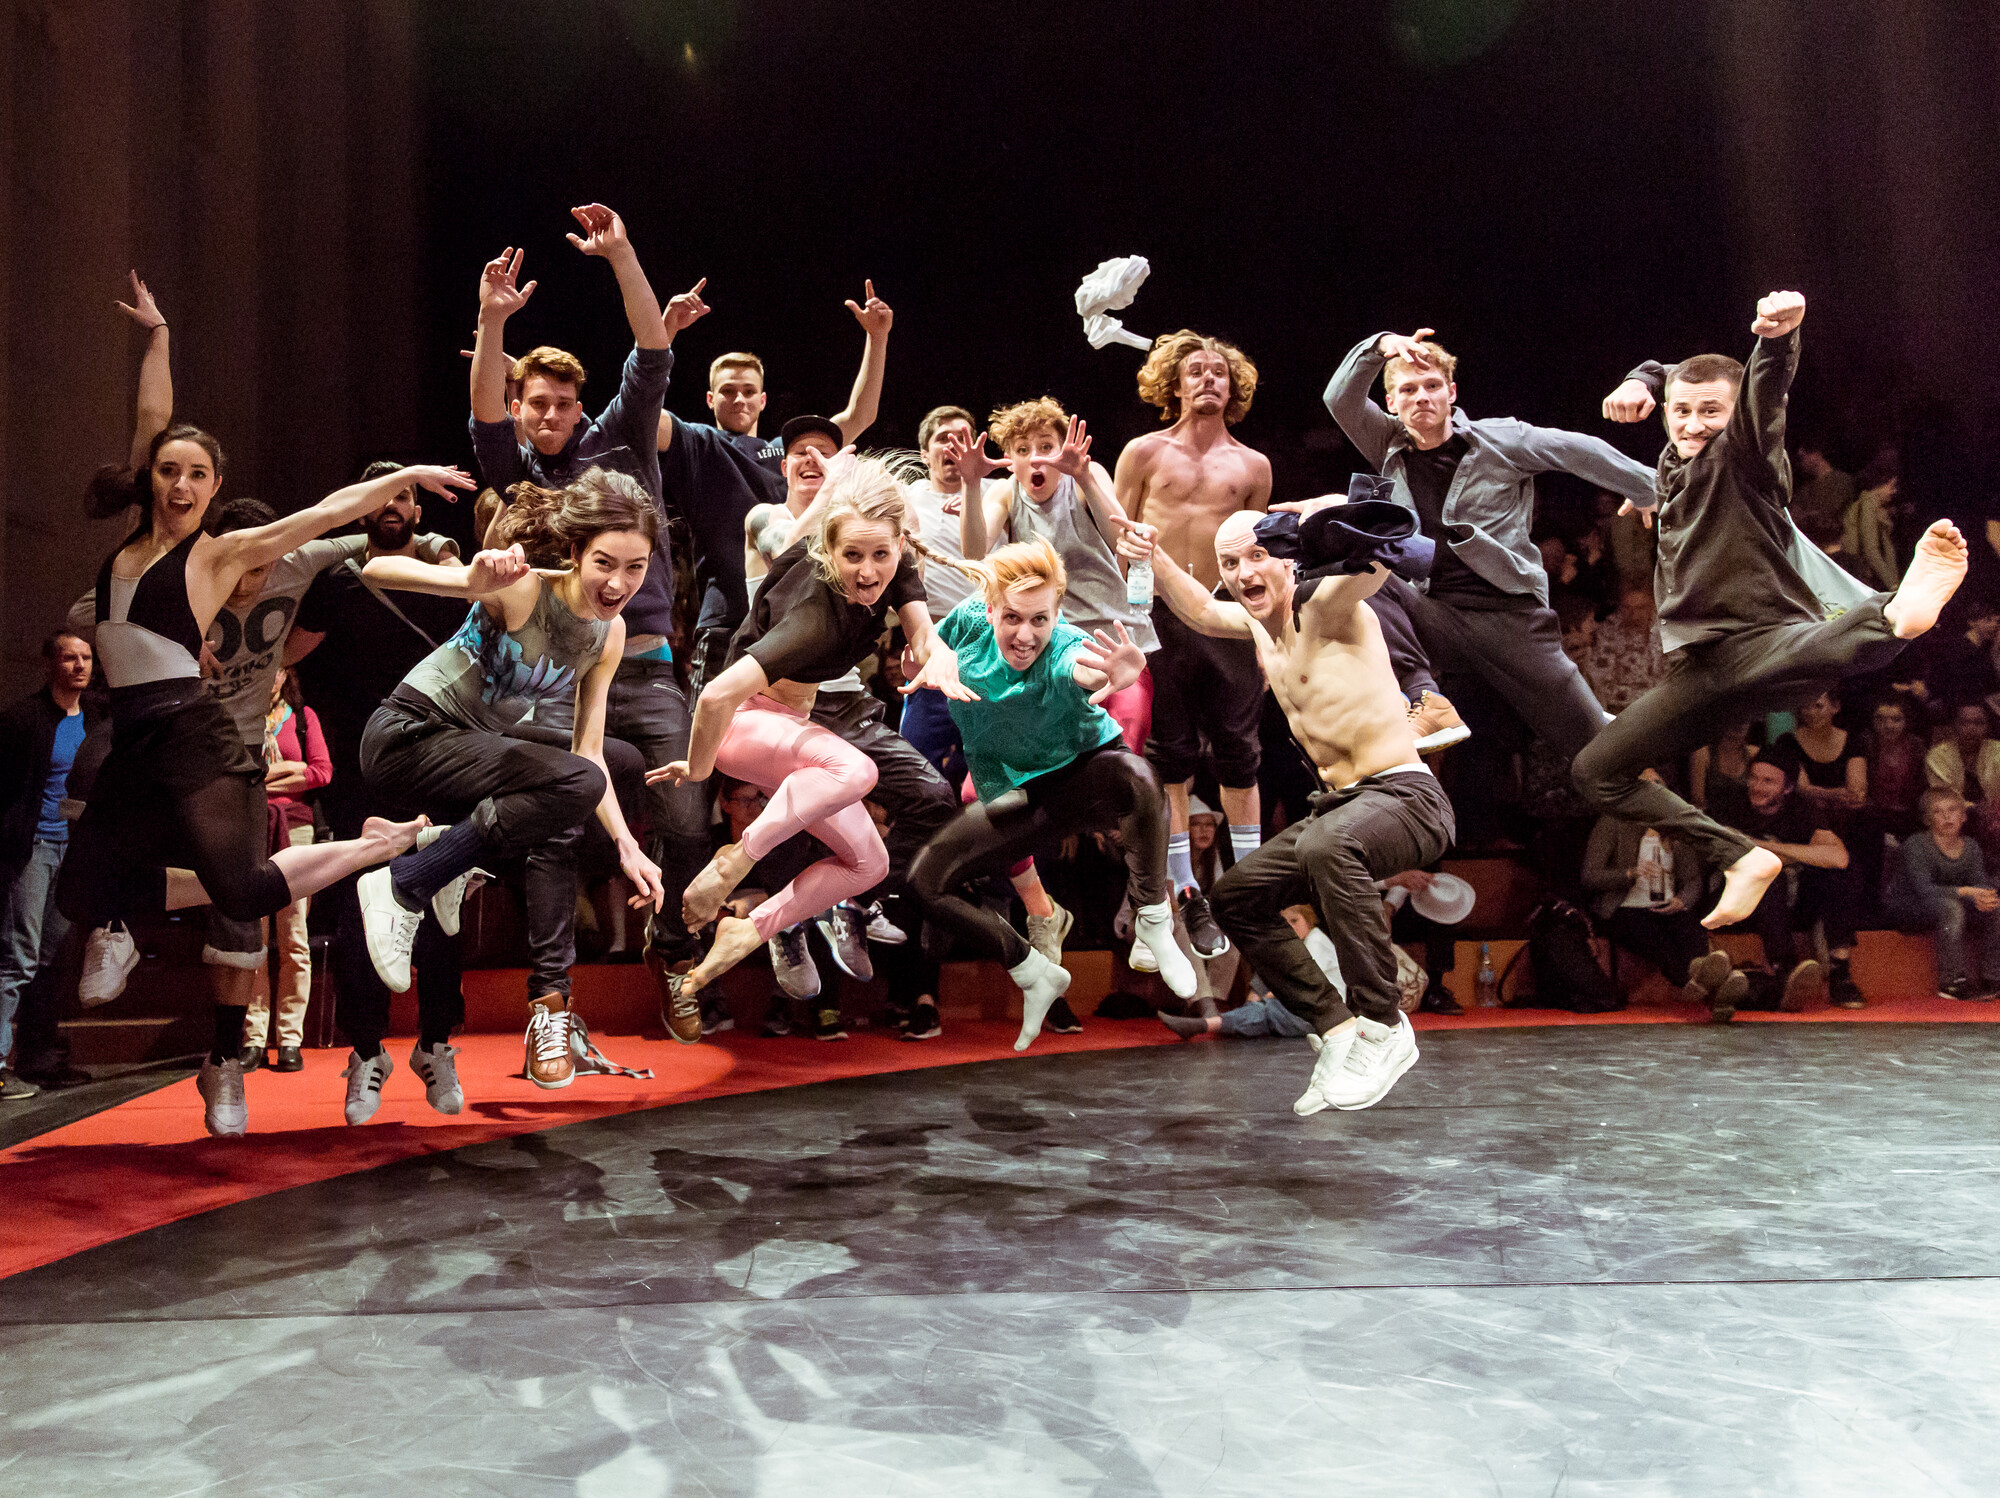 Eine Gruppe von Personen springt während einer Performance